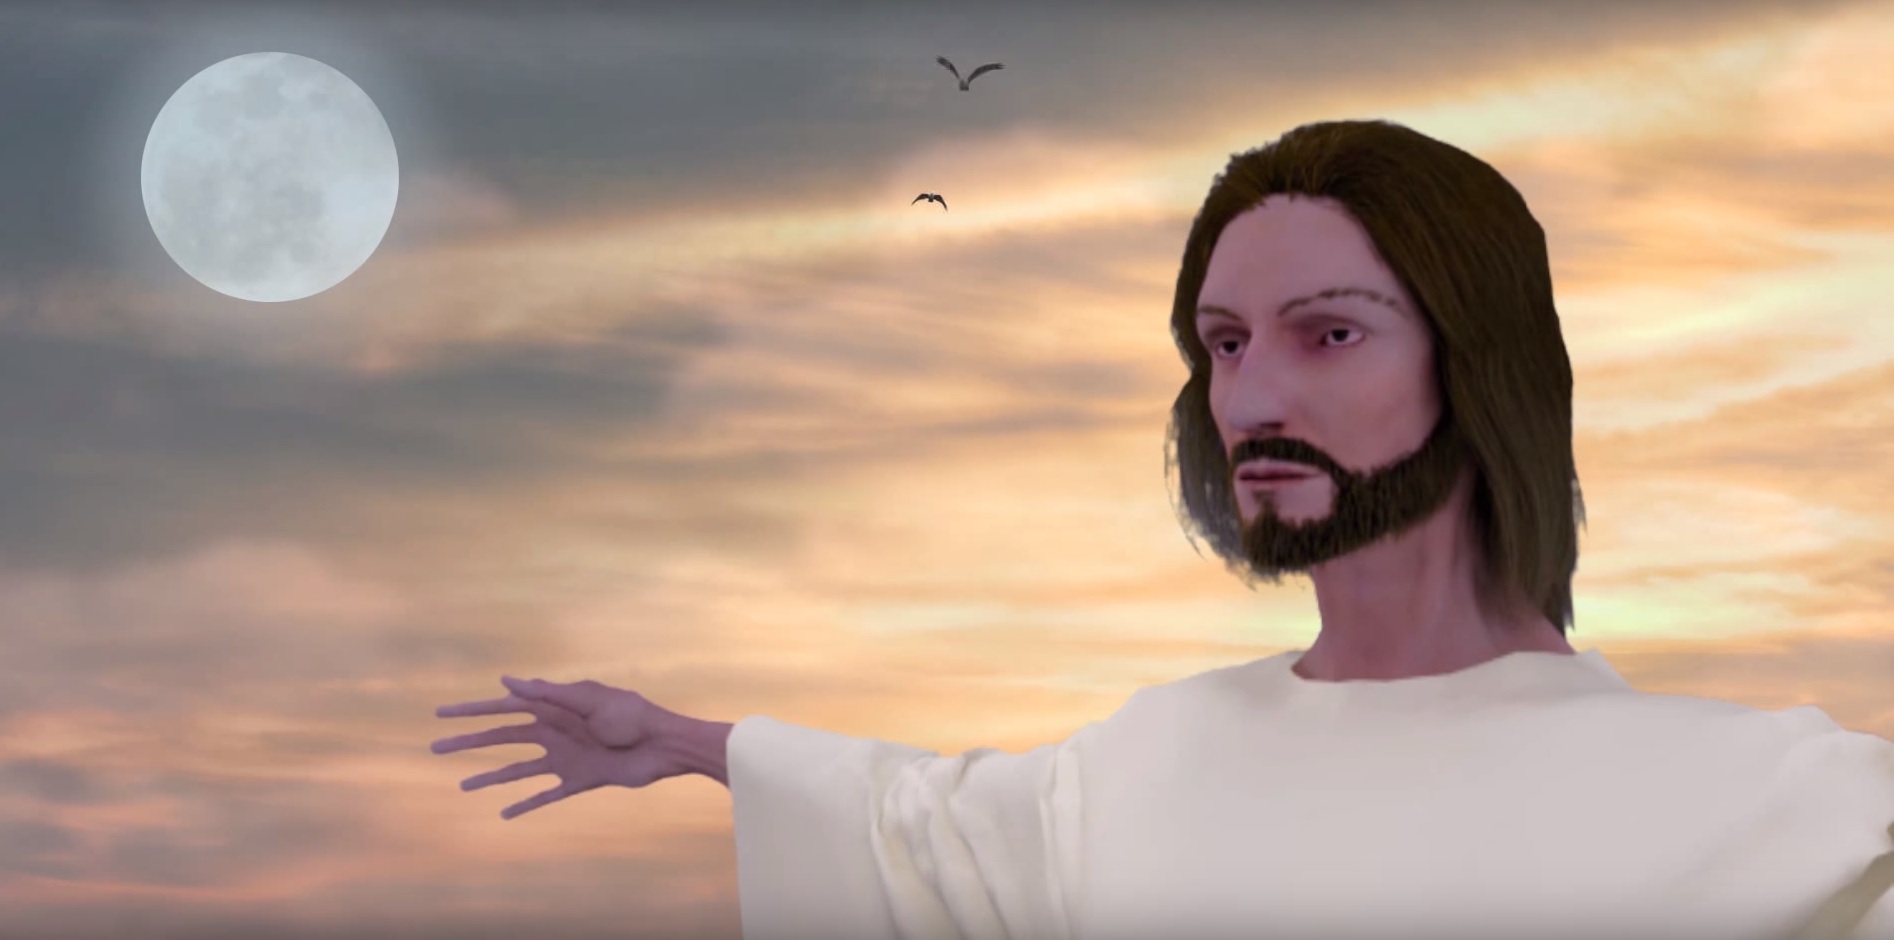 Jesus Christ for Muslims - Película Jesucristo hijo del hombre